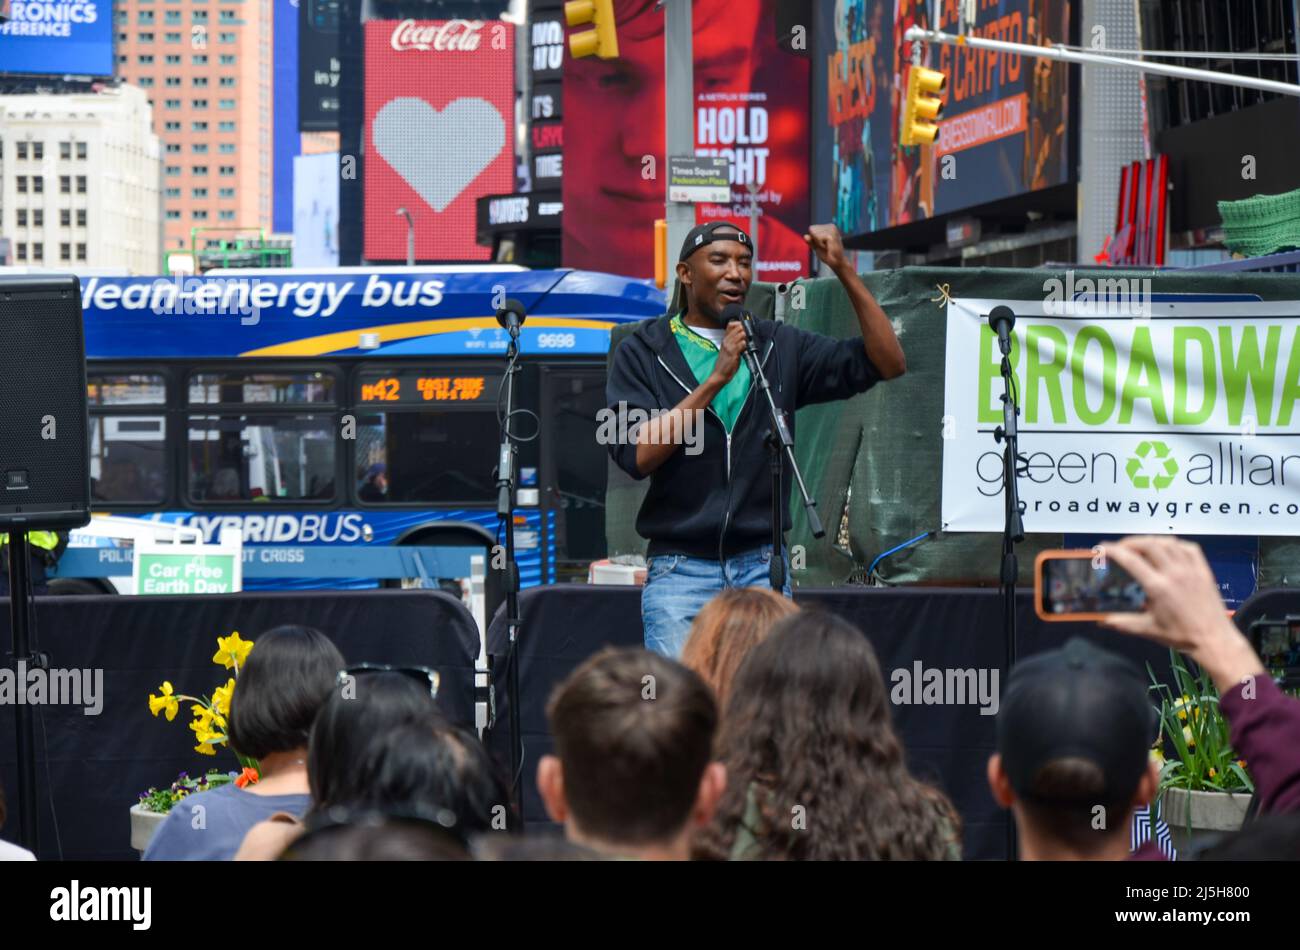 Des artistes se produisent pour célébrer le jour annuel de la Terre à Times Square, dans la ville de New York, le 23 avril 2022. Banque D'Images